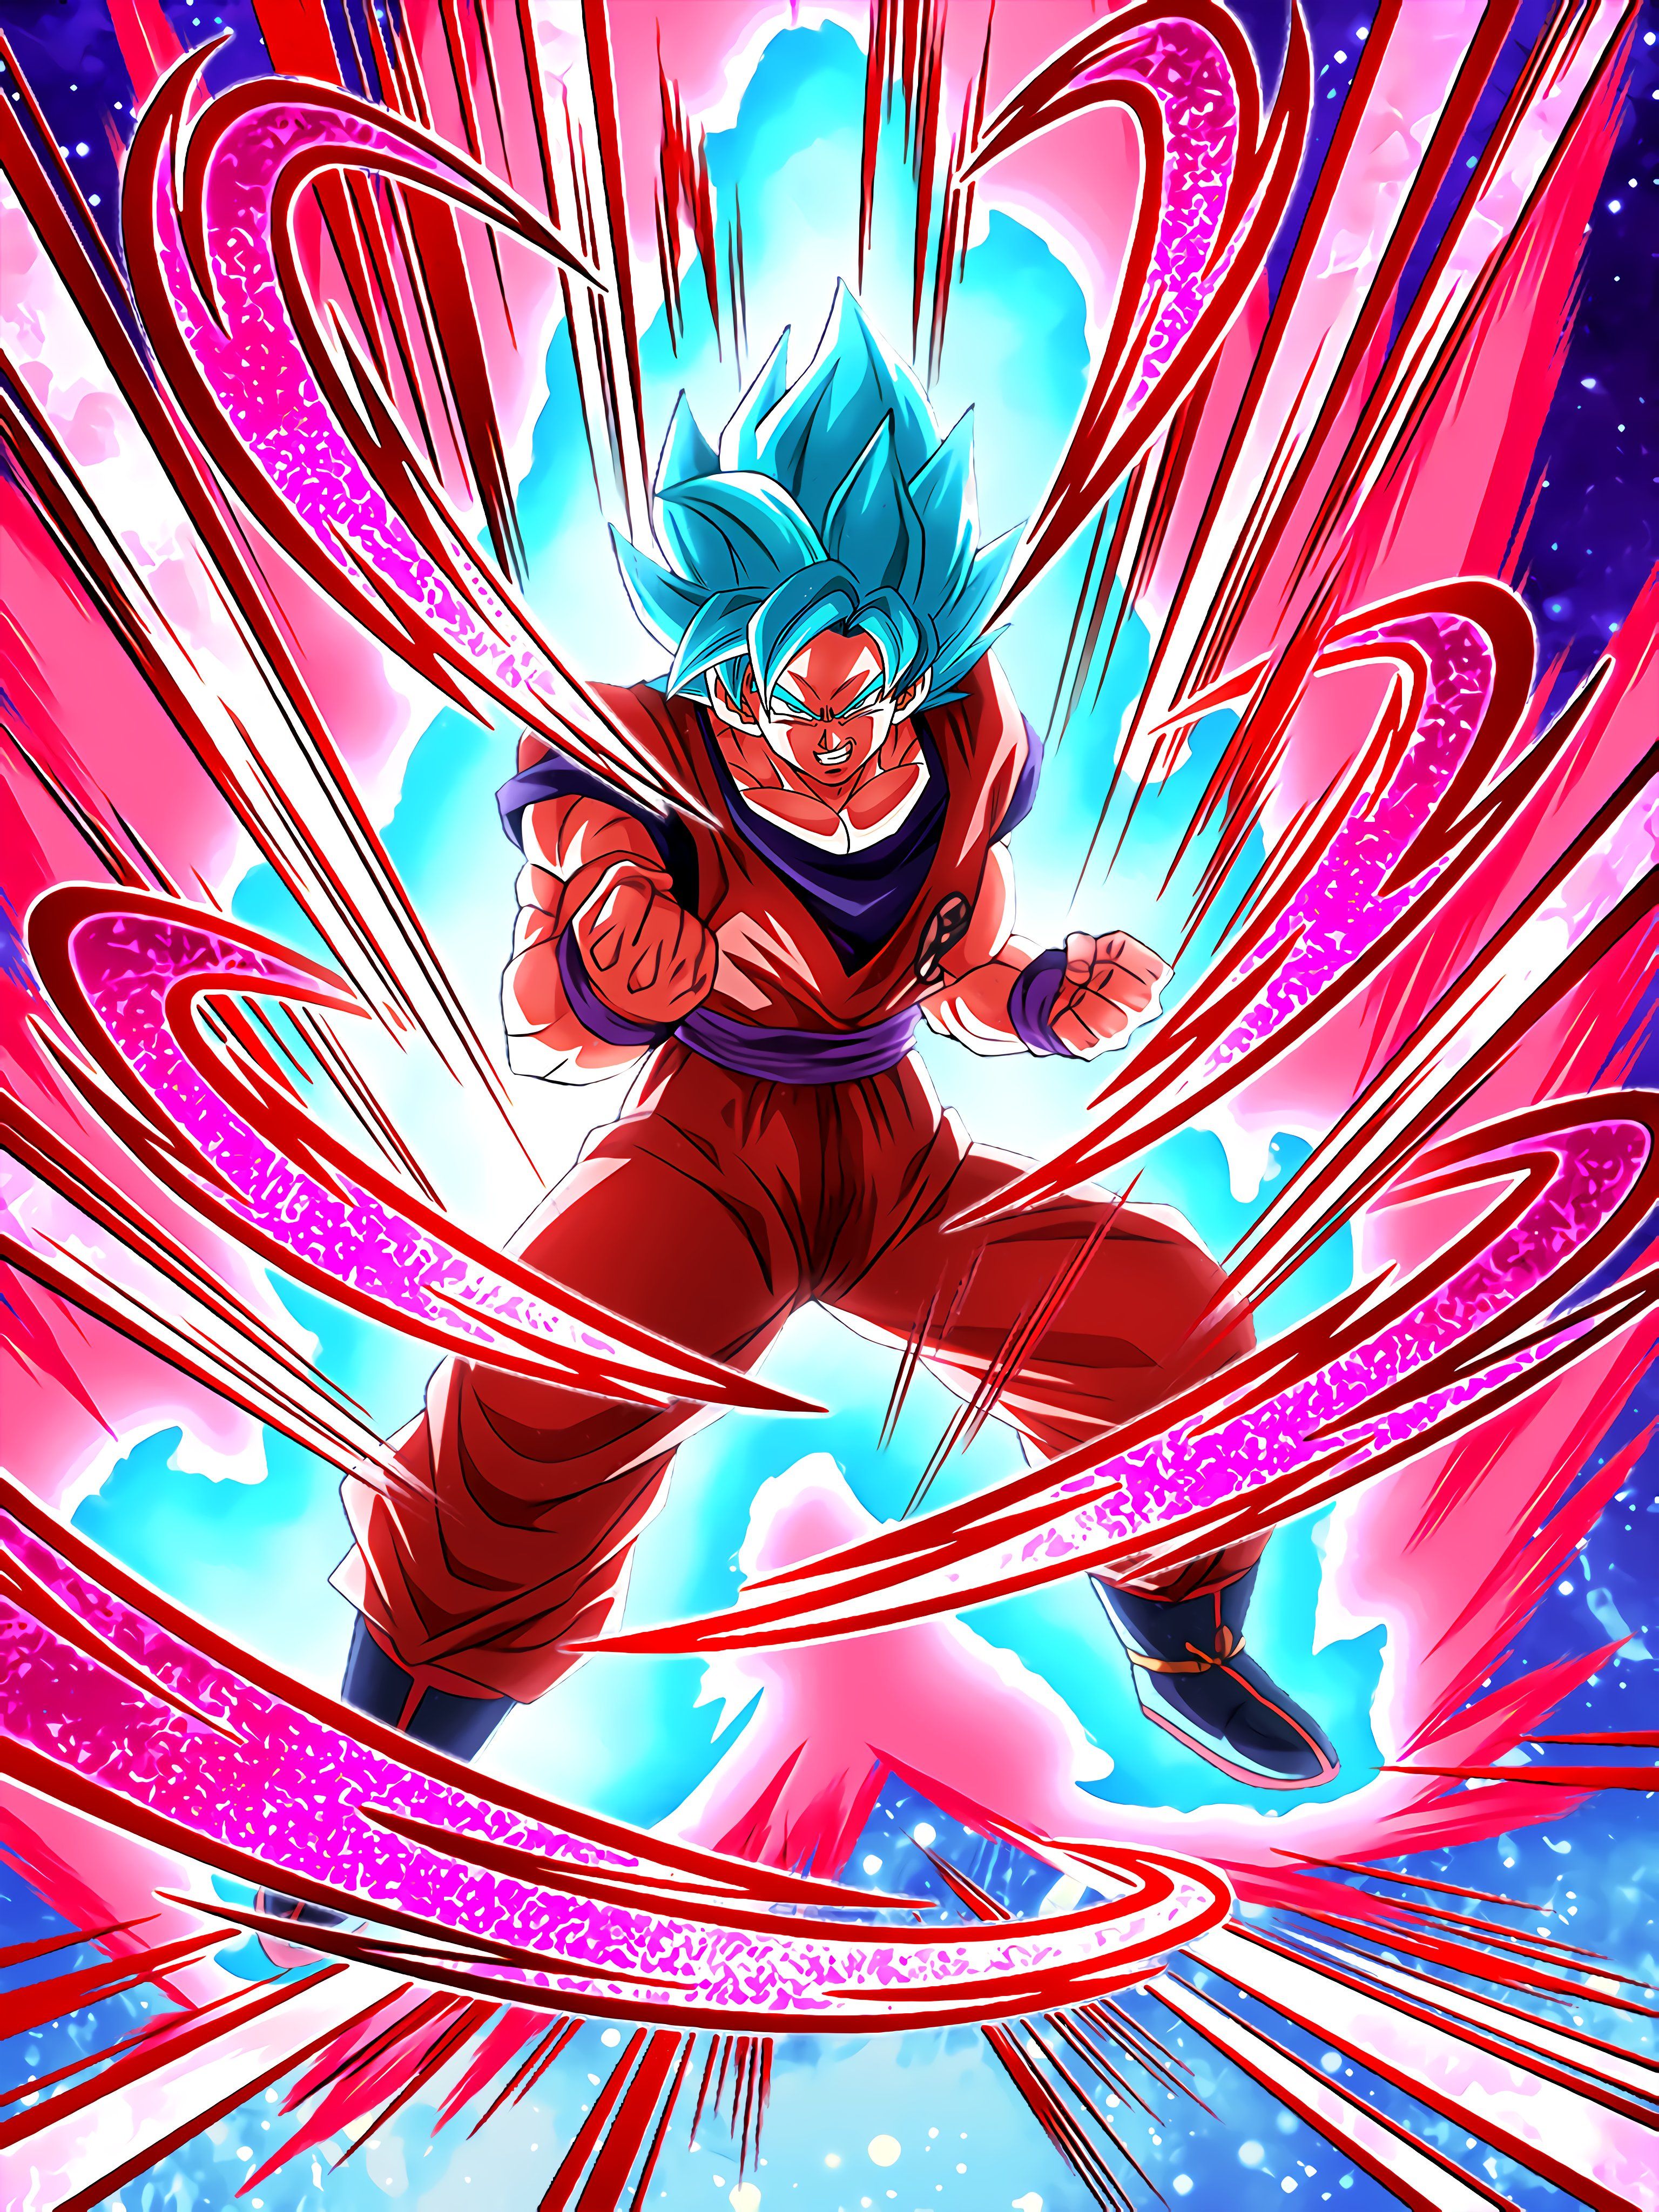 Final Super Power Super Saiyan God SS Goku Kaioken Art.